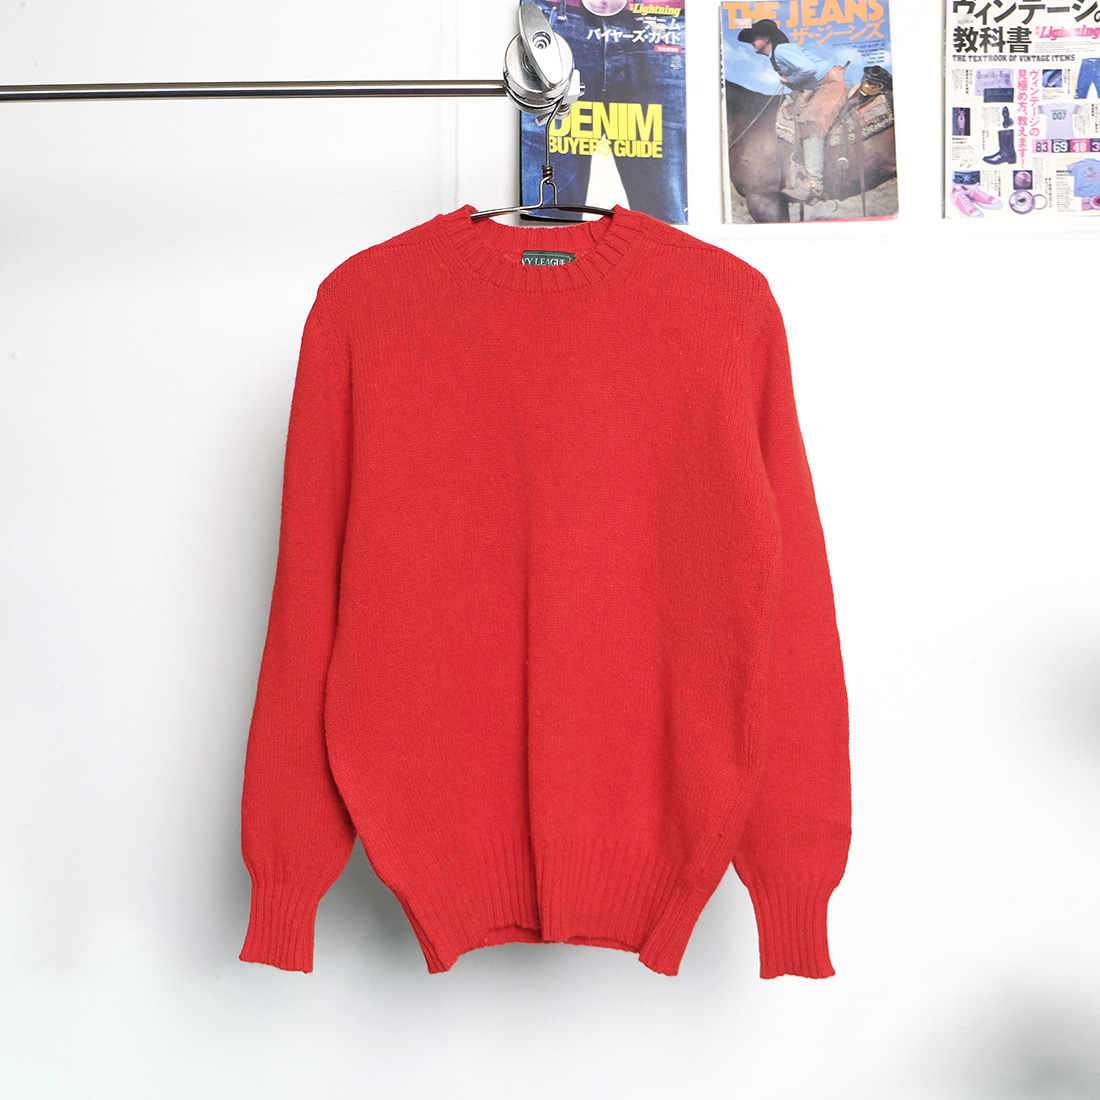 아이비리그 / Made in scotland  Ivy league shetland wool sweater